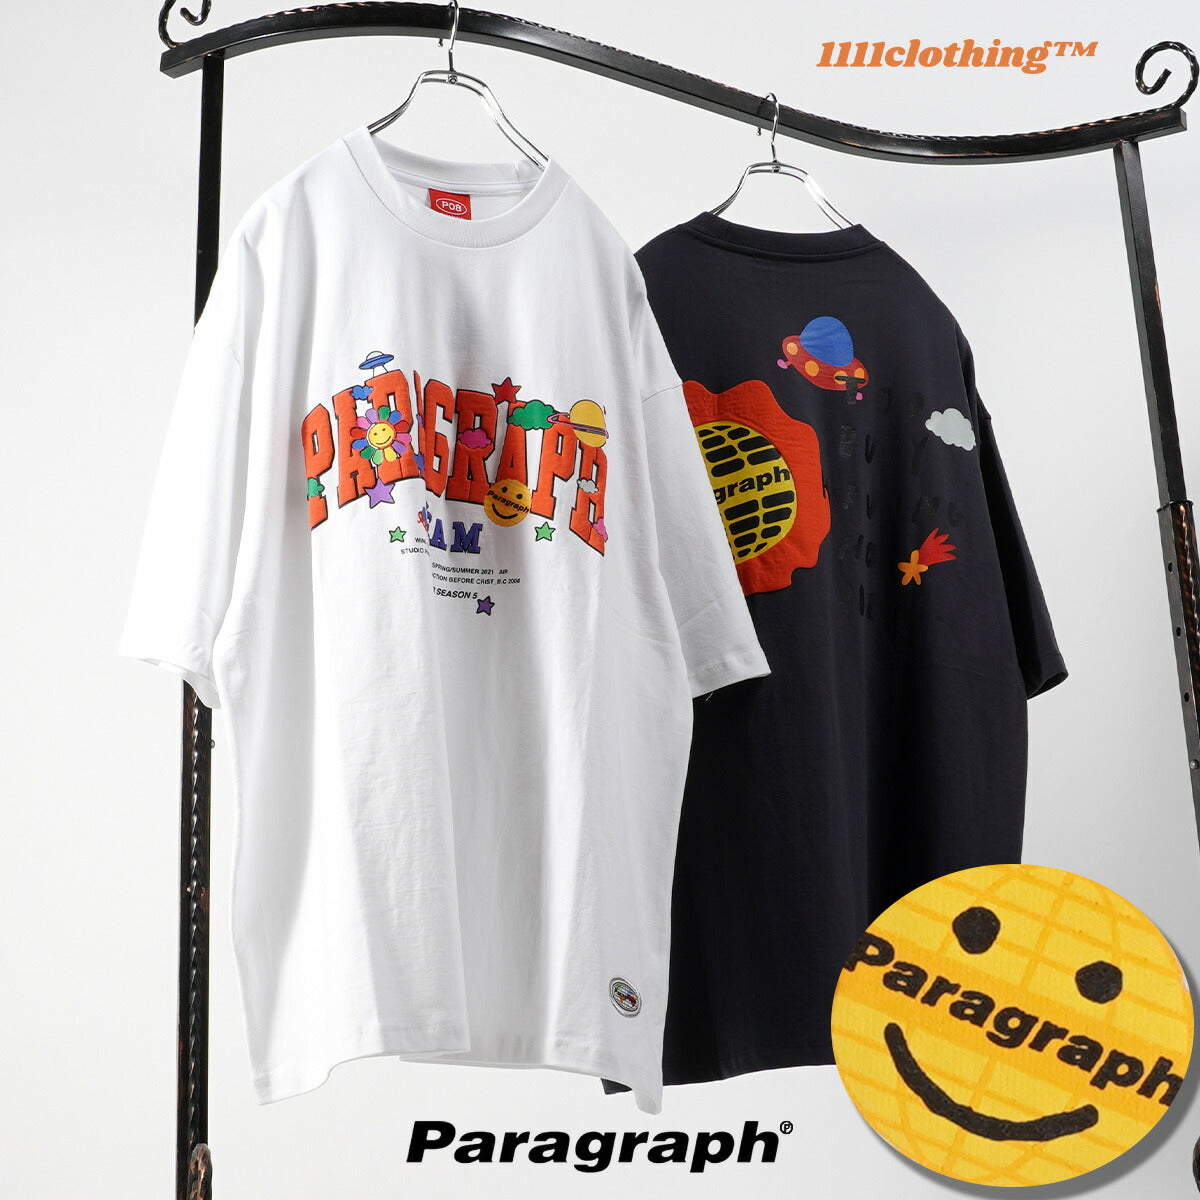 ◇Paragraph / パラグラフ Tシャツ◇ 正規品 ブランド tシャツ メンズ